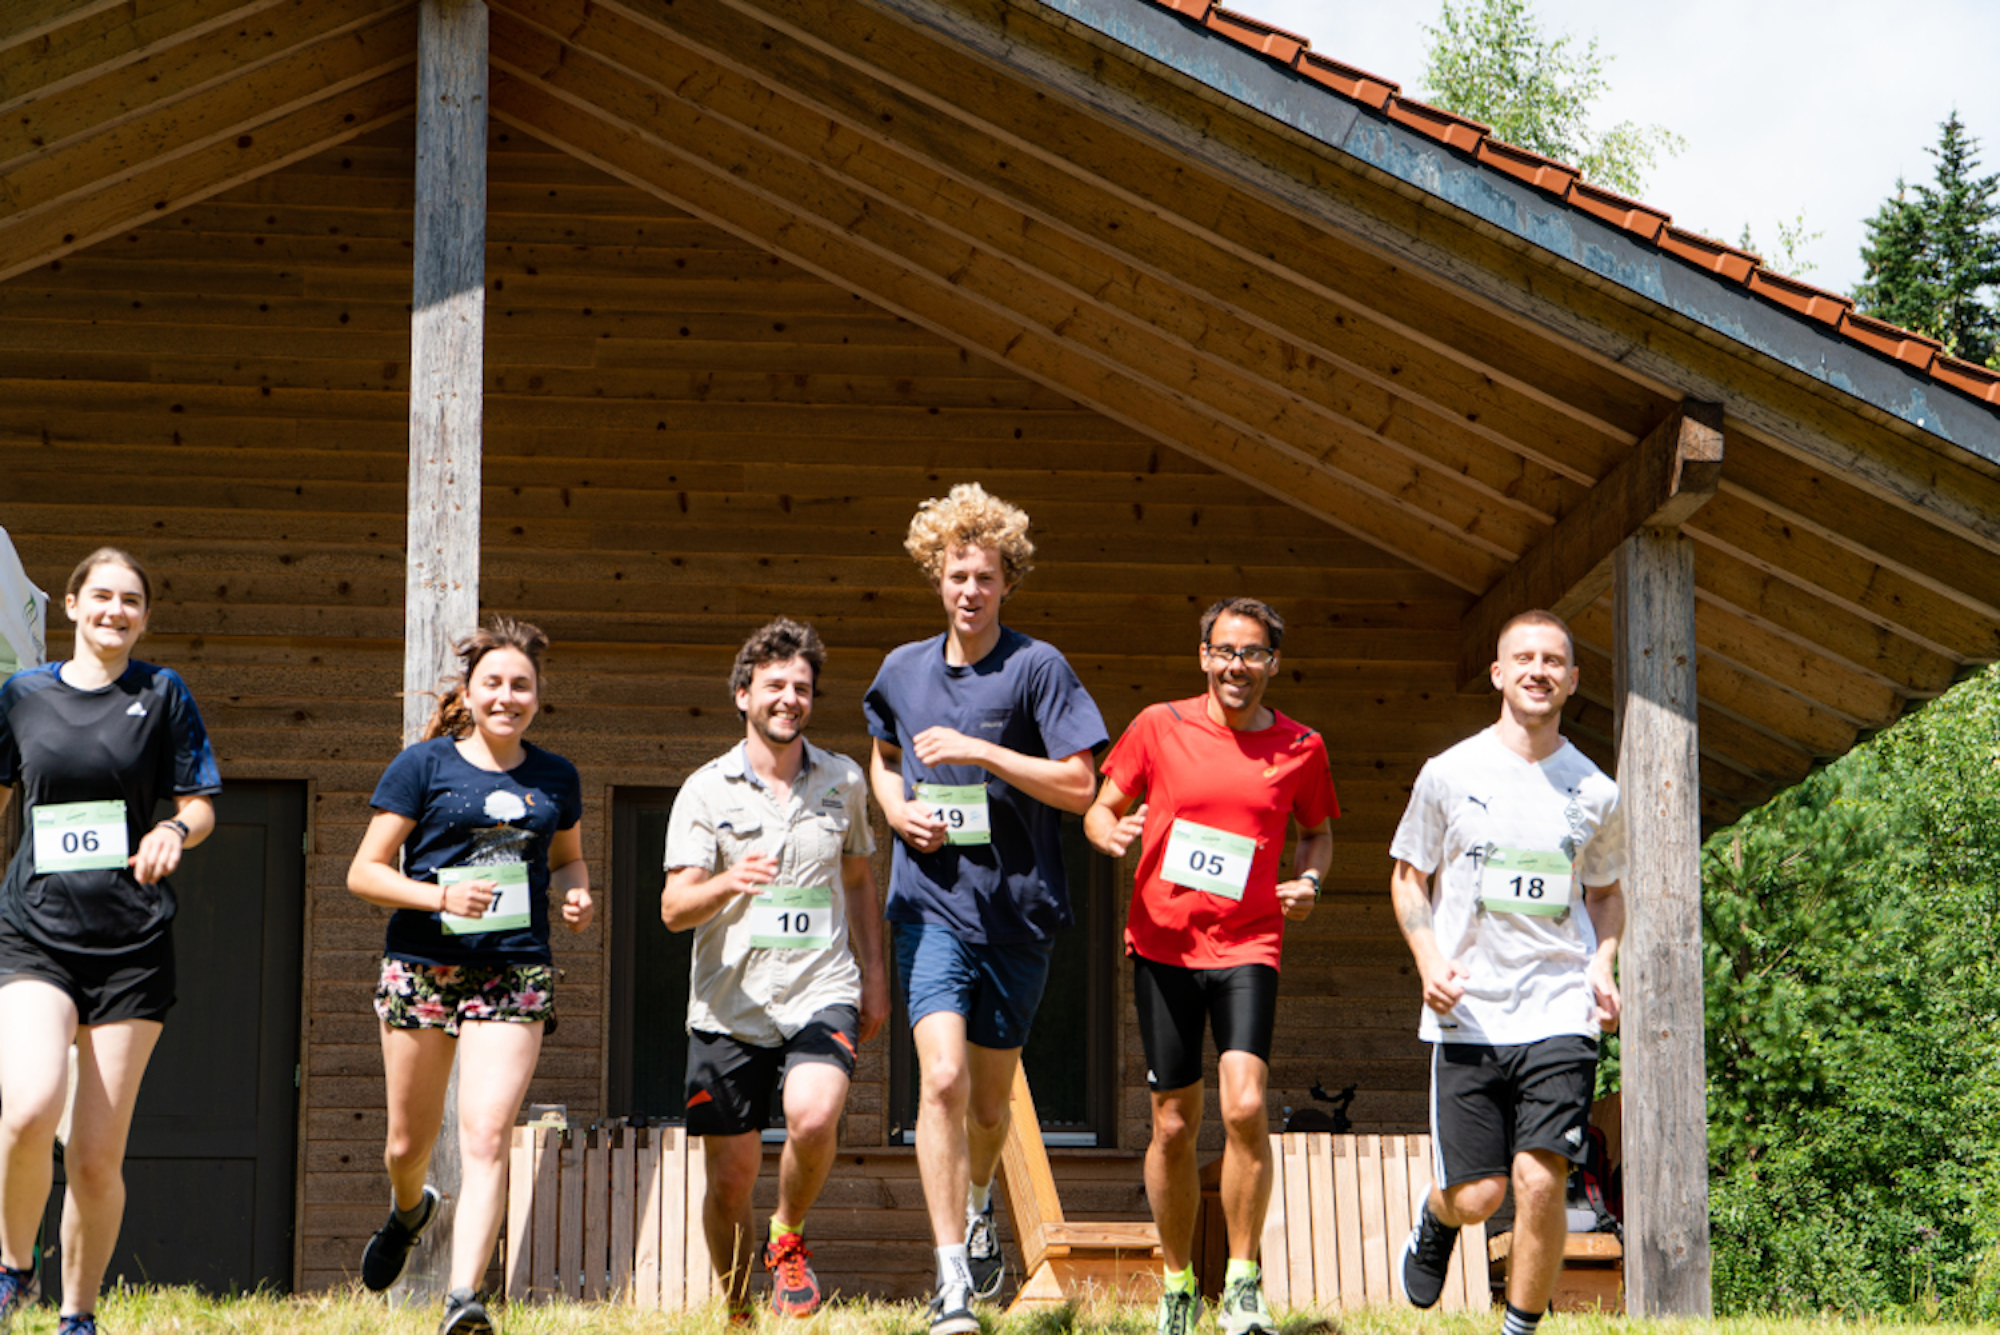 Auf dem Bild sind sportlich und kurz gekleidete Läufer zu sehen, mit Nummernschildern auf dem T-Shirt vor einer Holzhütte, die offenbar gut gelaunt sind.